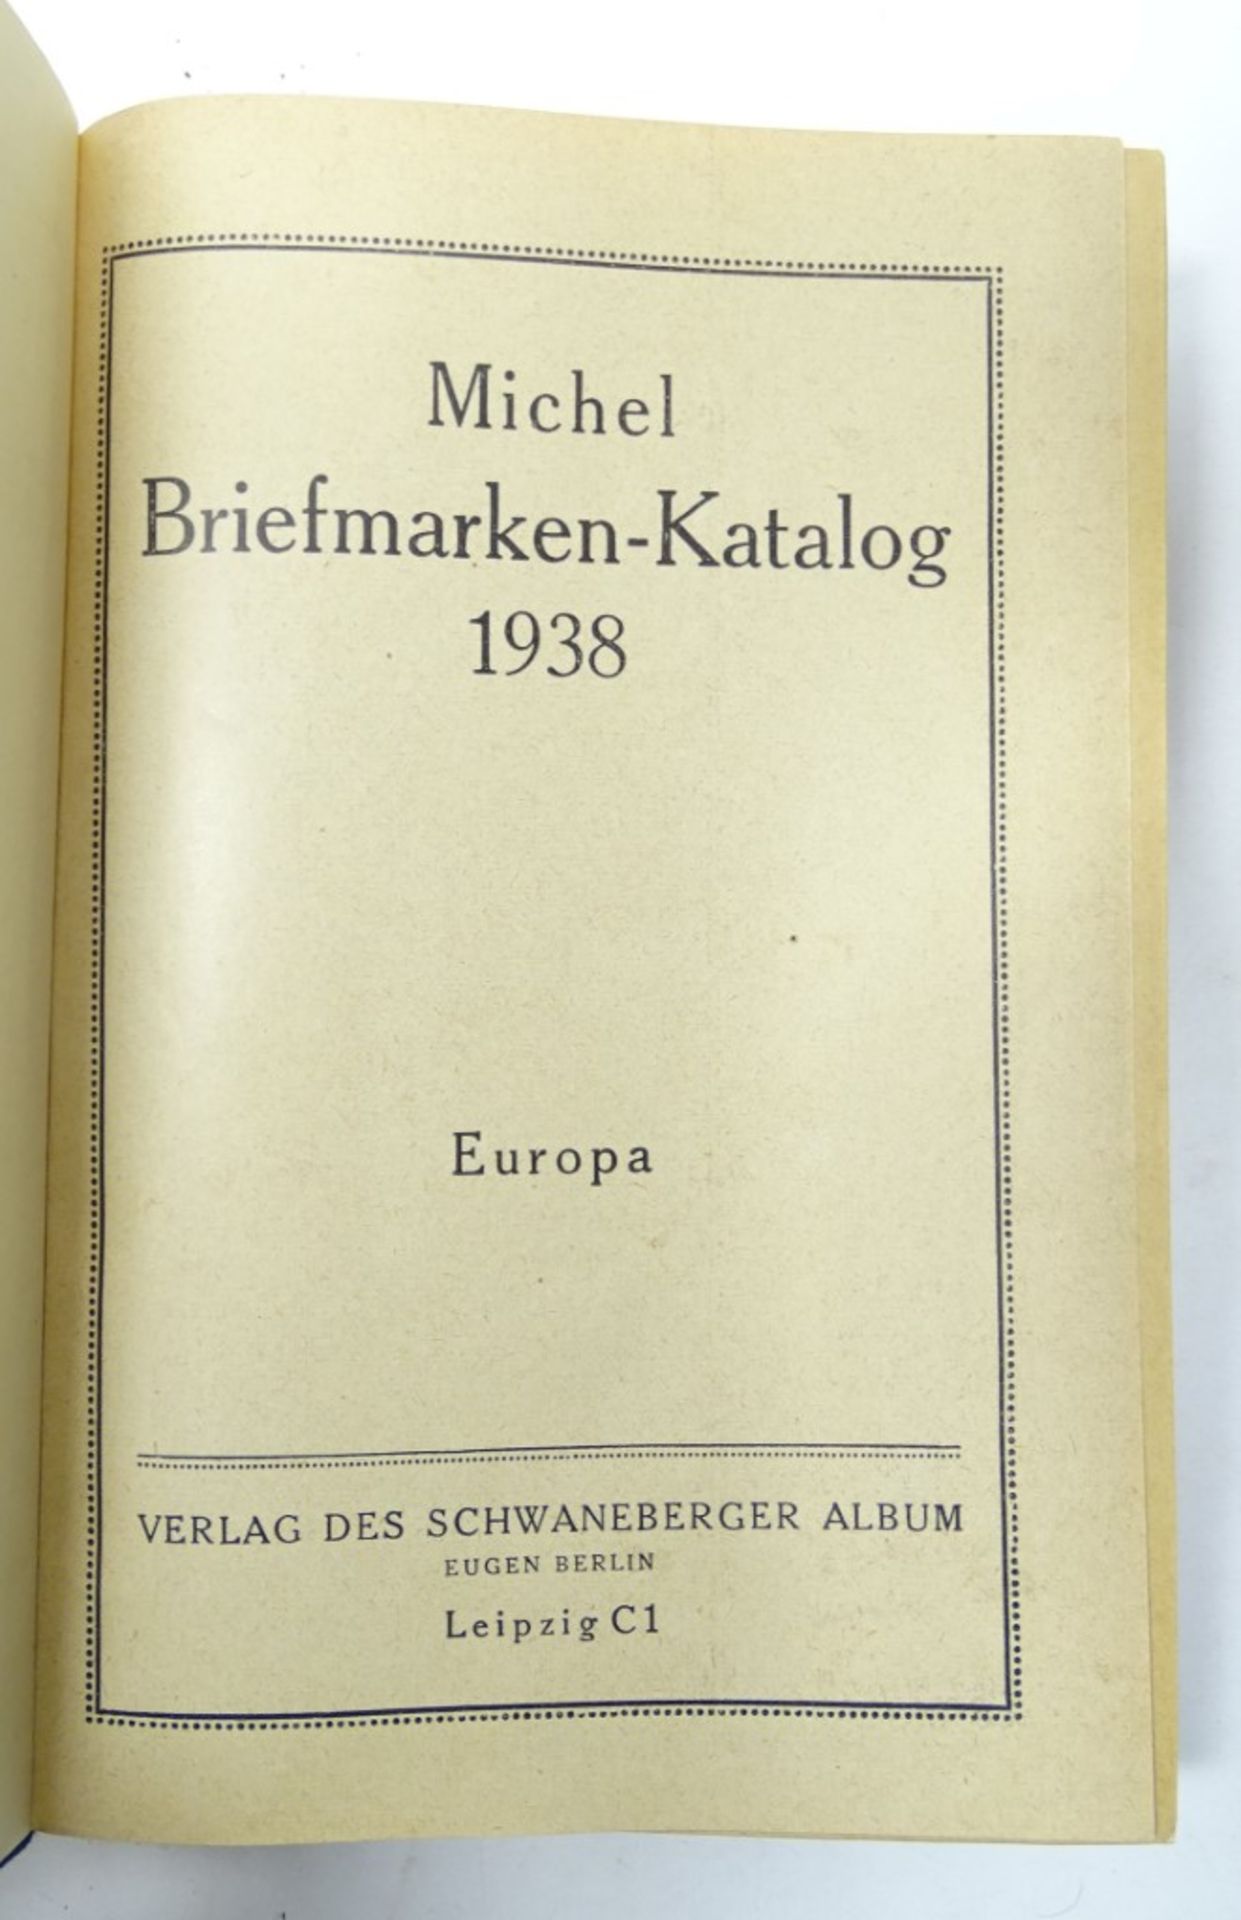 Michel Briefmarken Katalog. Europa, Verlag des Schwaneberger Album, Leipzig 1938, sehr guter Zustan - Bild 5 aus 6